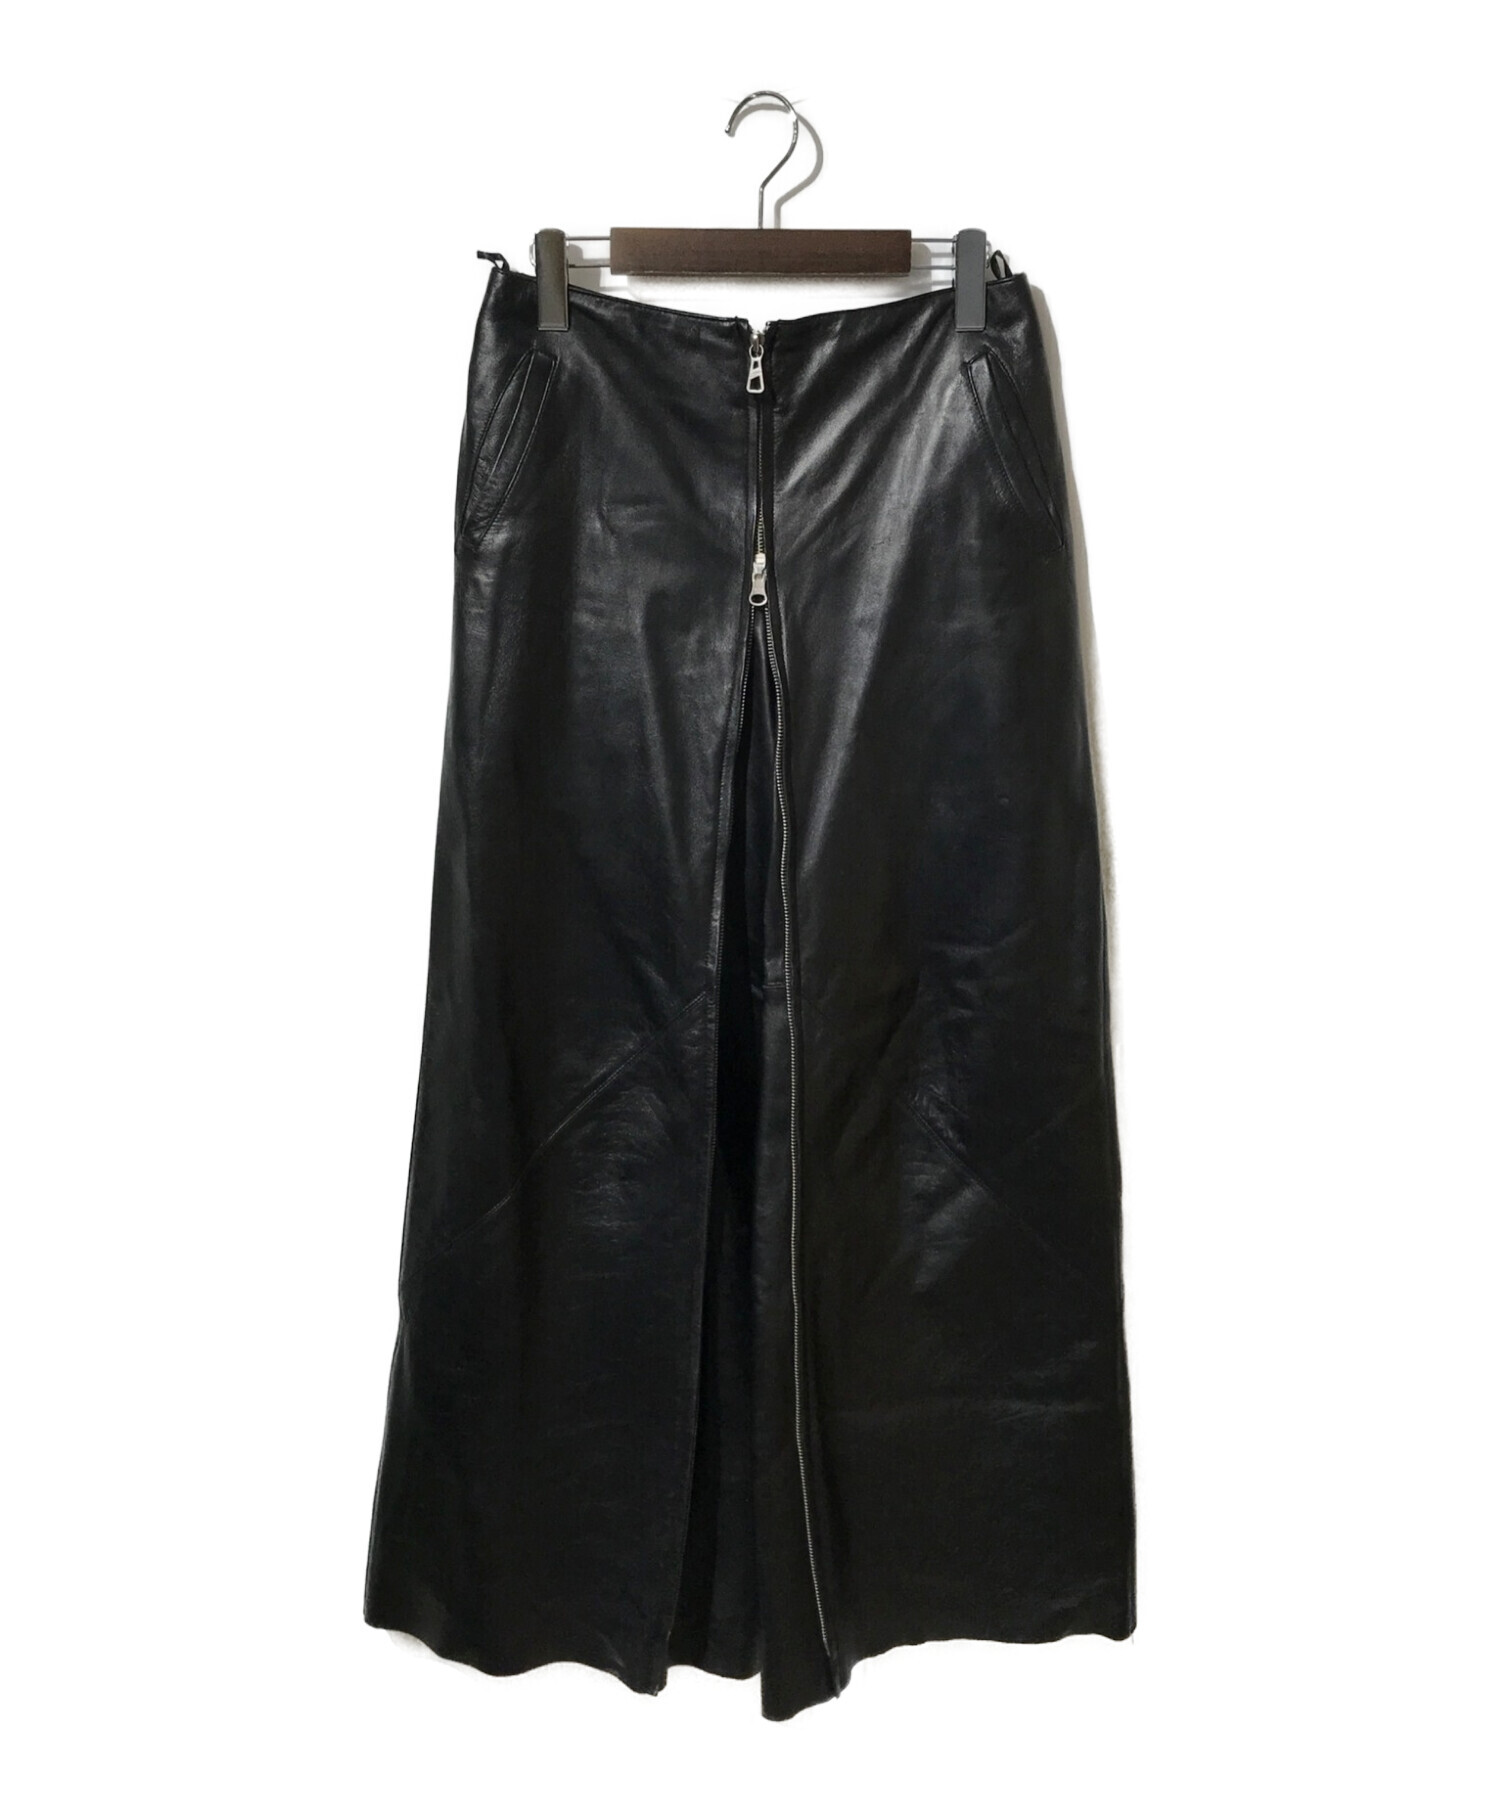 Jean Paul Gaultier FEMME (ジャンポールゴルチェフェム) 2WAYレザーパンツスカート ブラック サイズ:40